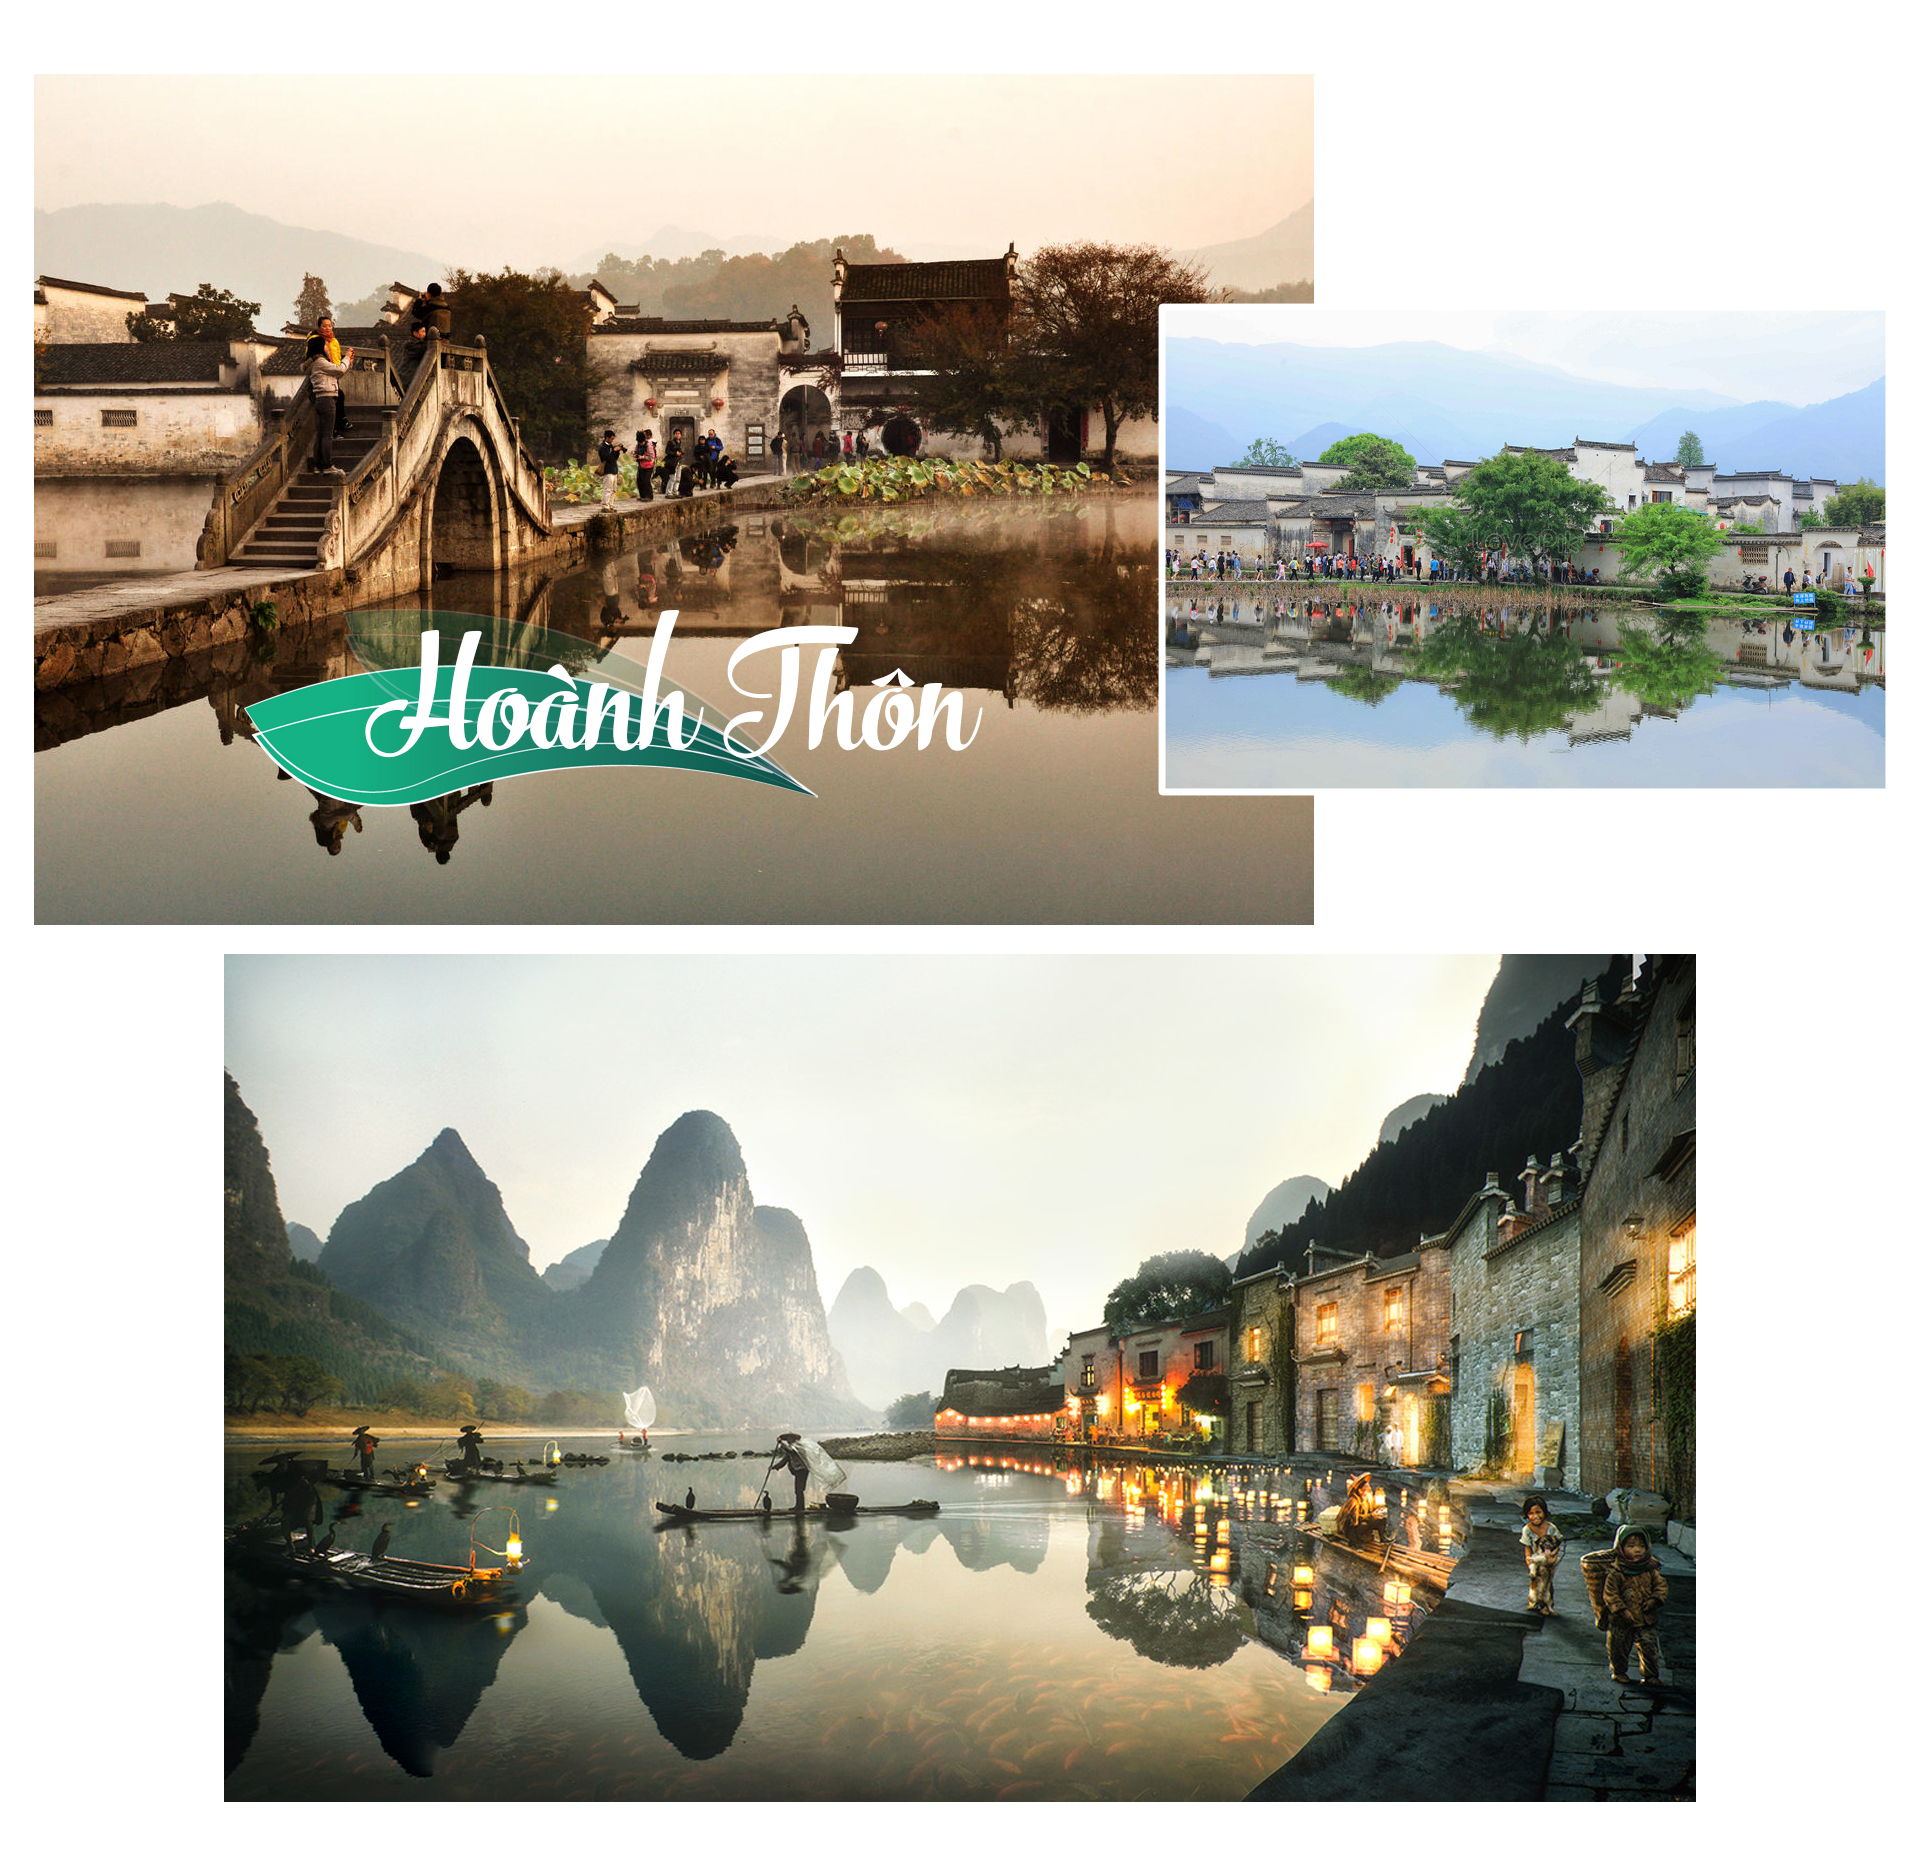 Chiêm ngưỡng 8 thị trấn cổ đẹp nhất Trung Quốc - 8